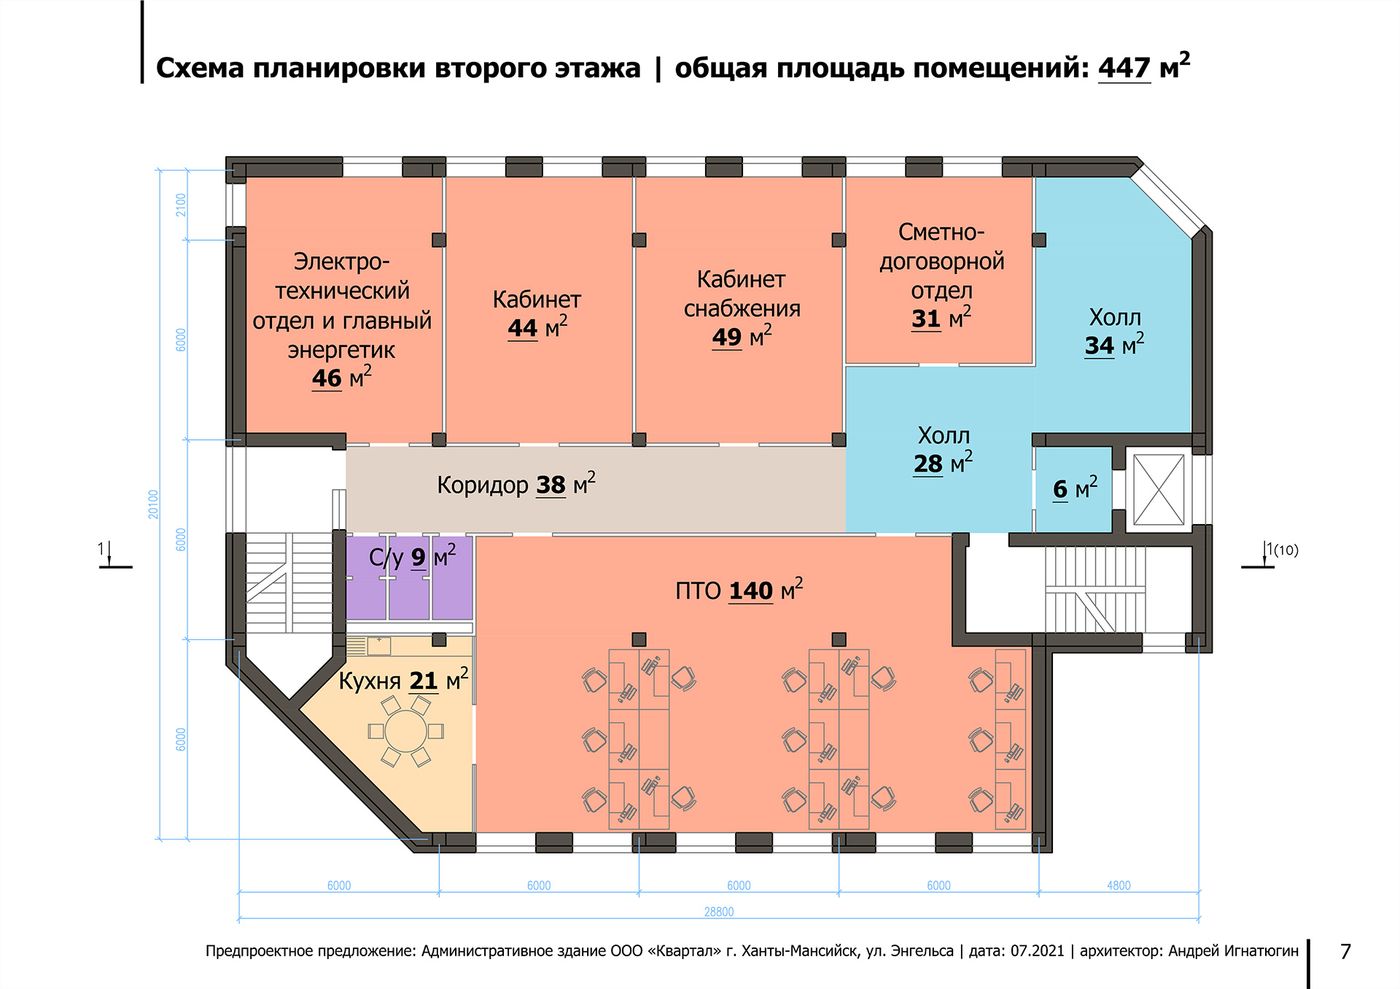 Схема планировки второго этажа